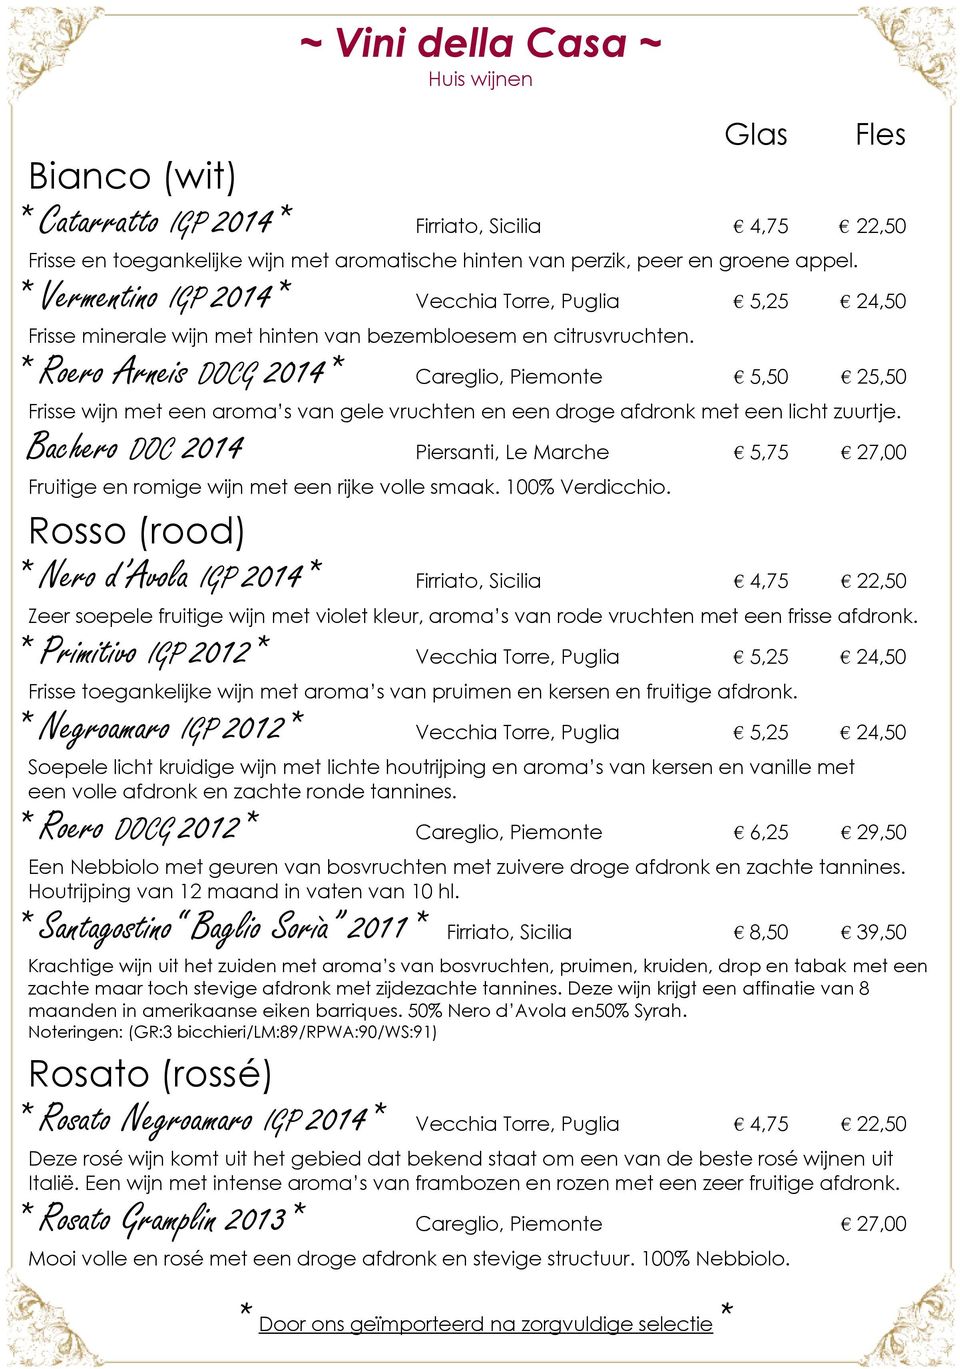 * Roero Arneis DOCG 2014* Careglio, Piemonte 5,50 25,50 Frisse wijn met een aroma s van gele vruchten en een droge afdronk met een licht zuurtje.